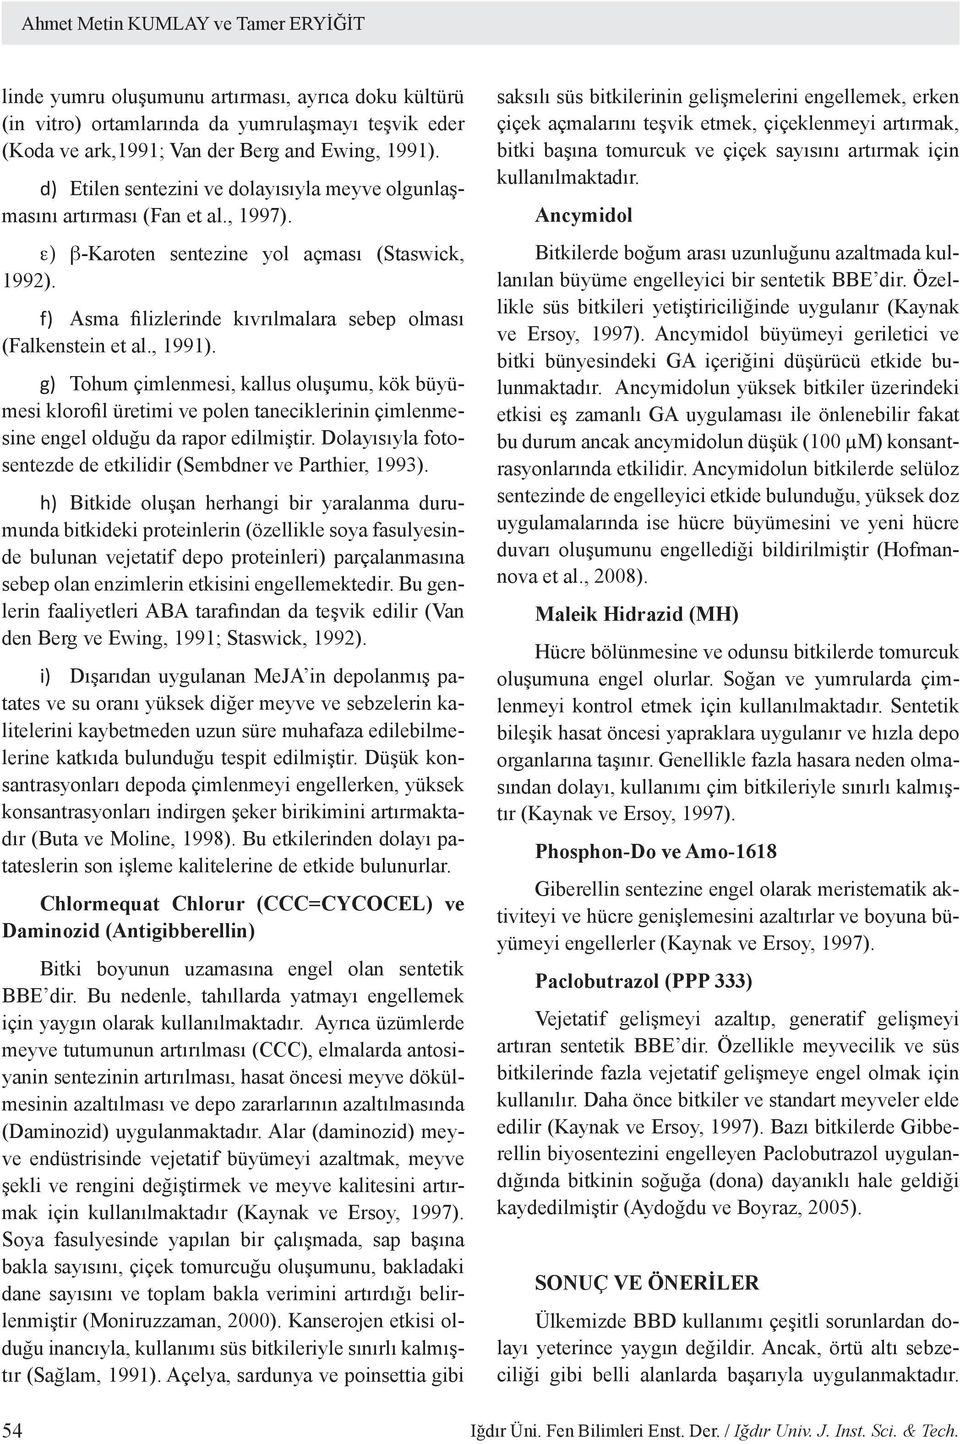 f) Asma filizlerinde kıvrılmalara sebep olması (Falkenstein et al., 1991).